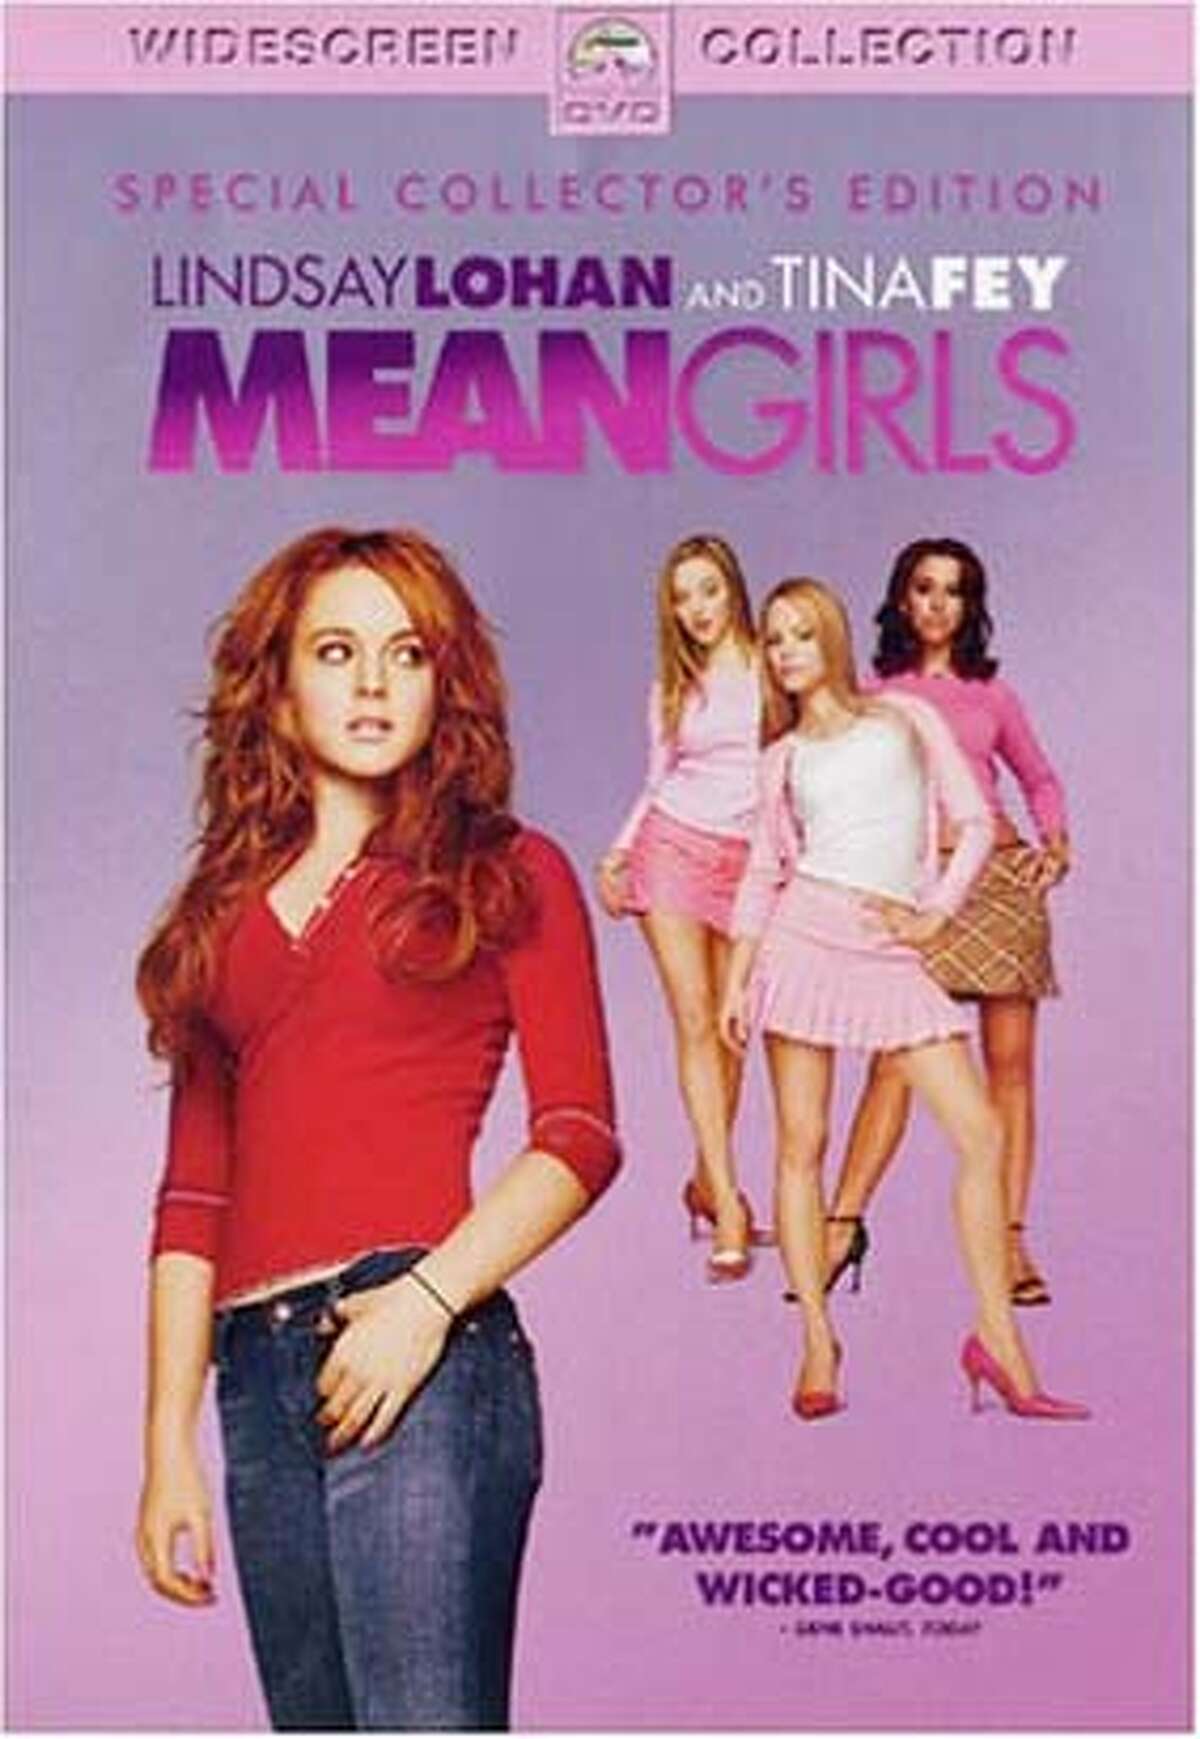 Cover art for "Mean Girls" DVD